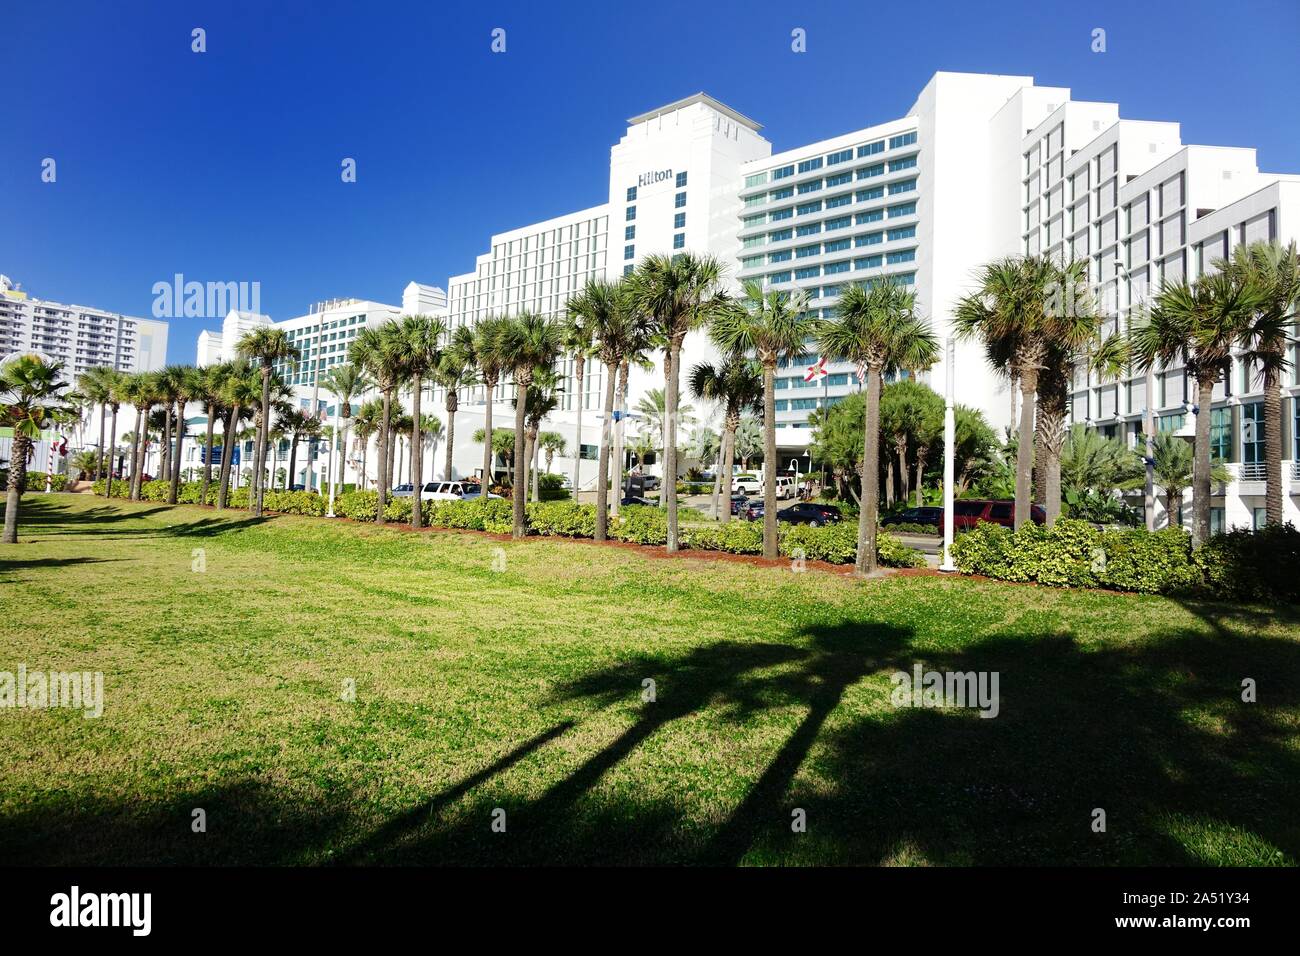 El Hilton es uno de los muchos hoteles frente al mar en Daytona Beach Foto de stock